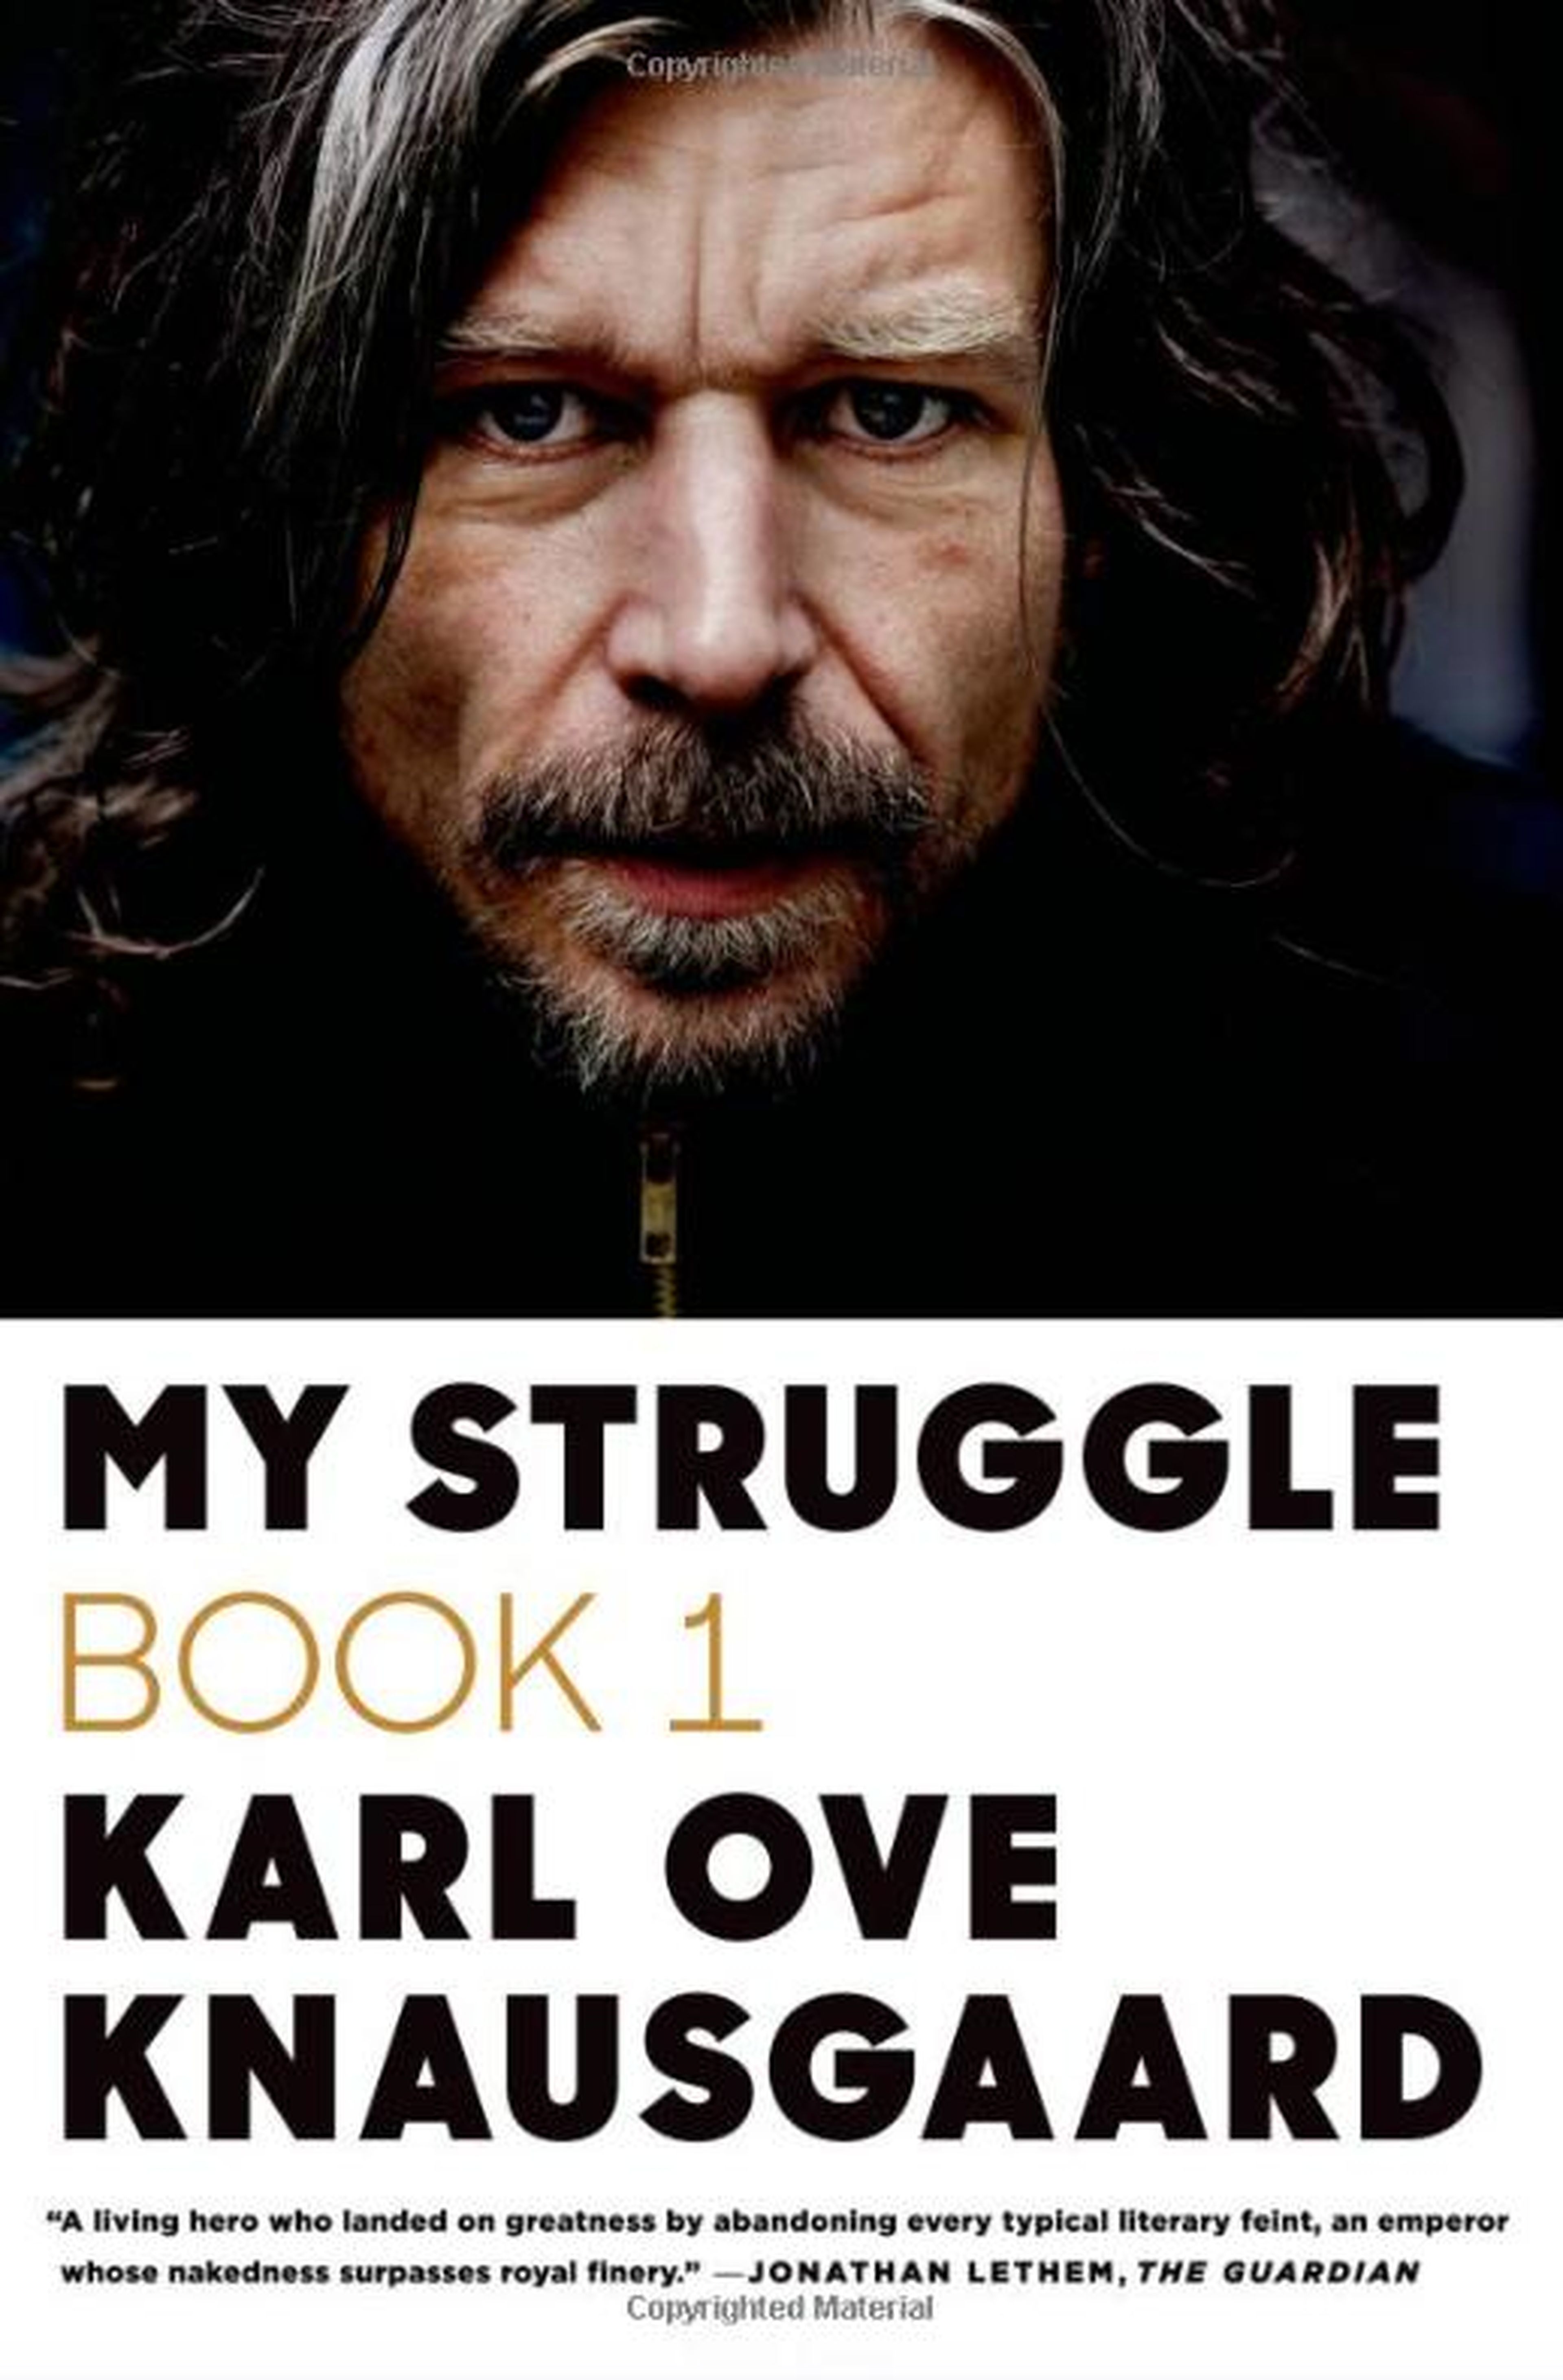 Atul Gawande: "My Struggle" by Karl Ove Knausgaard